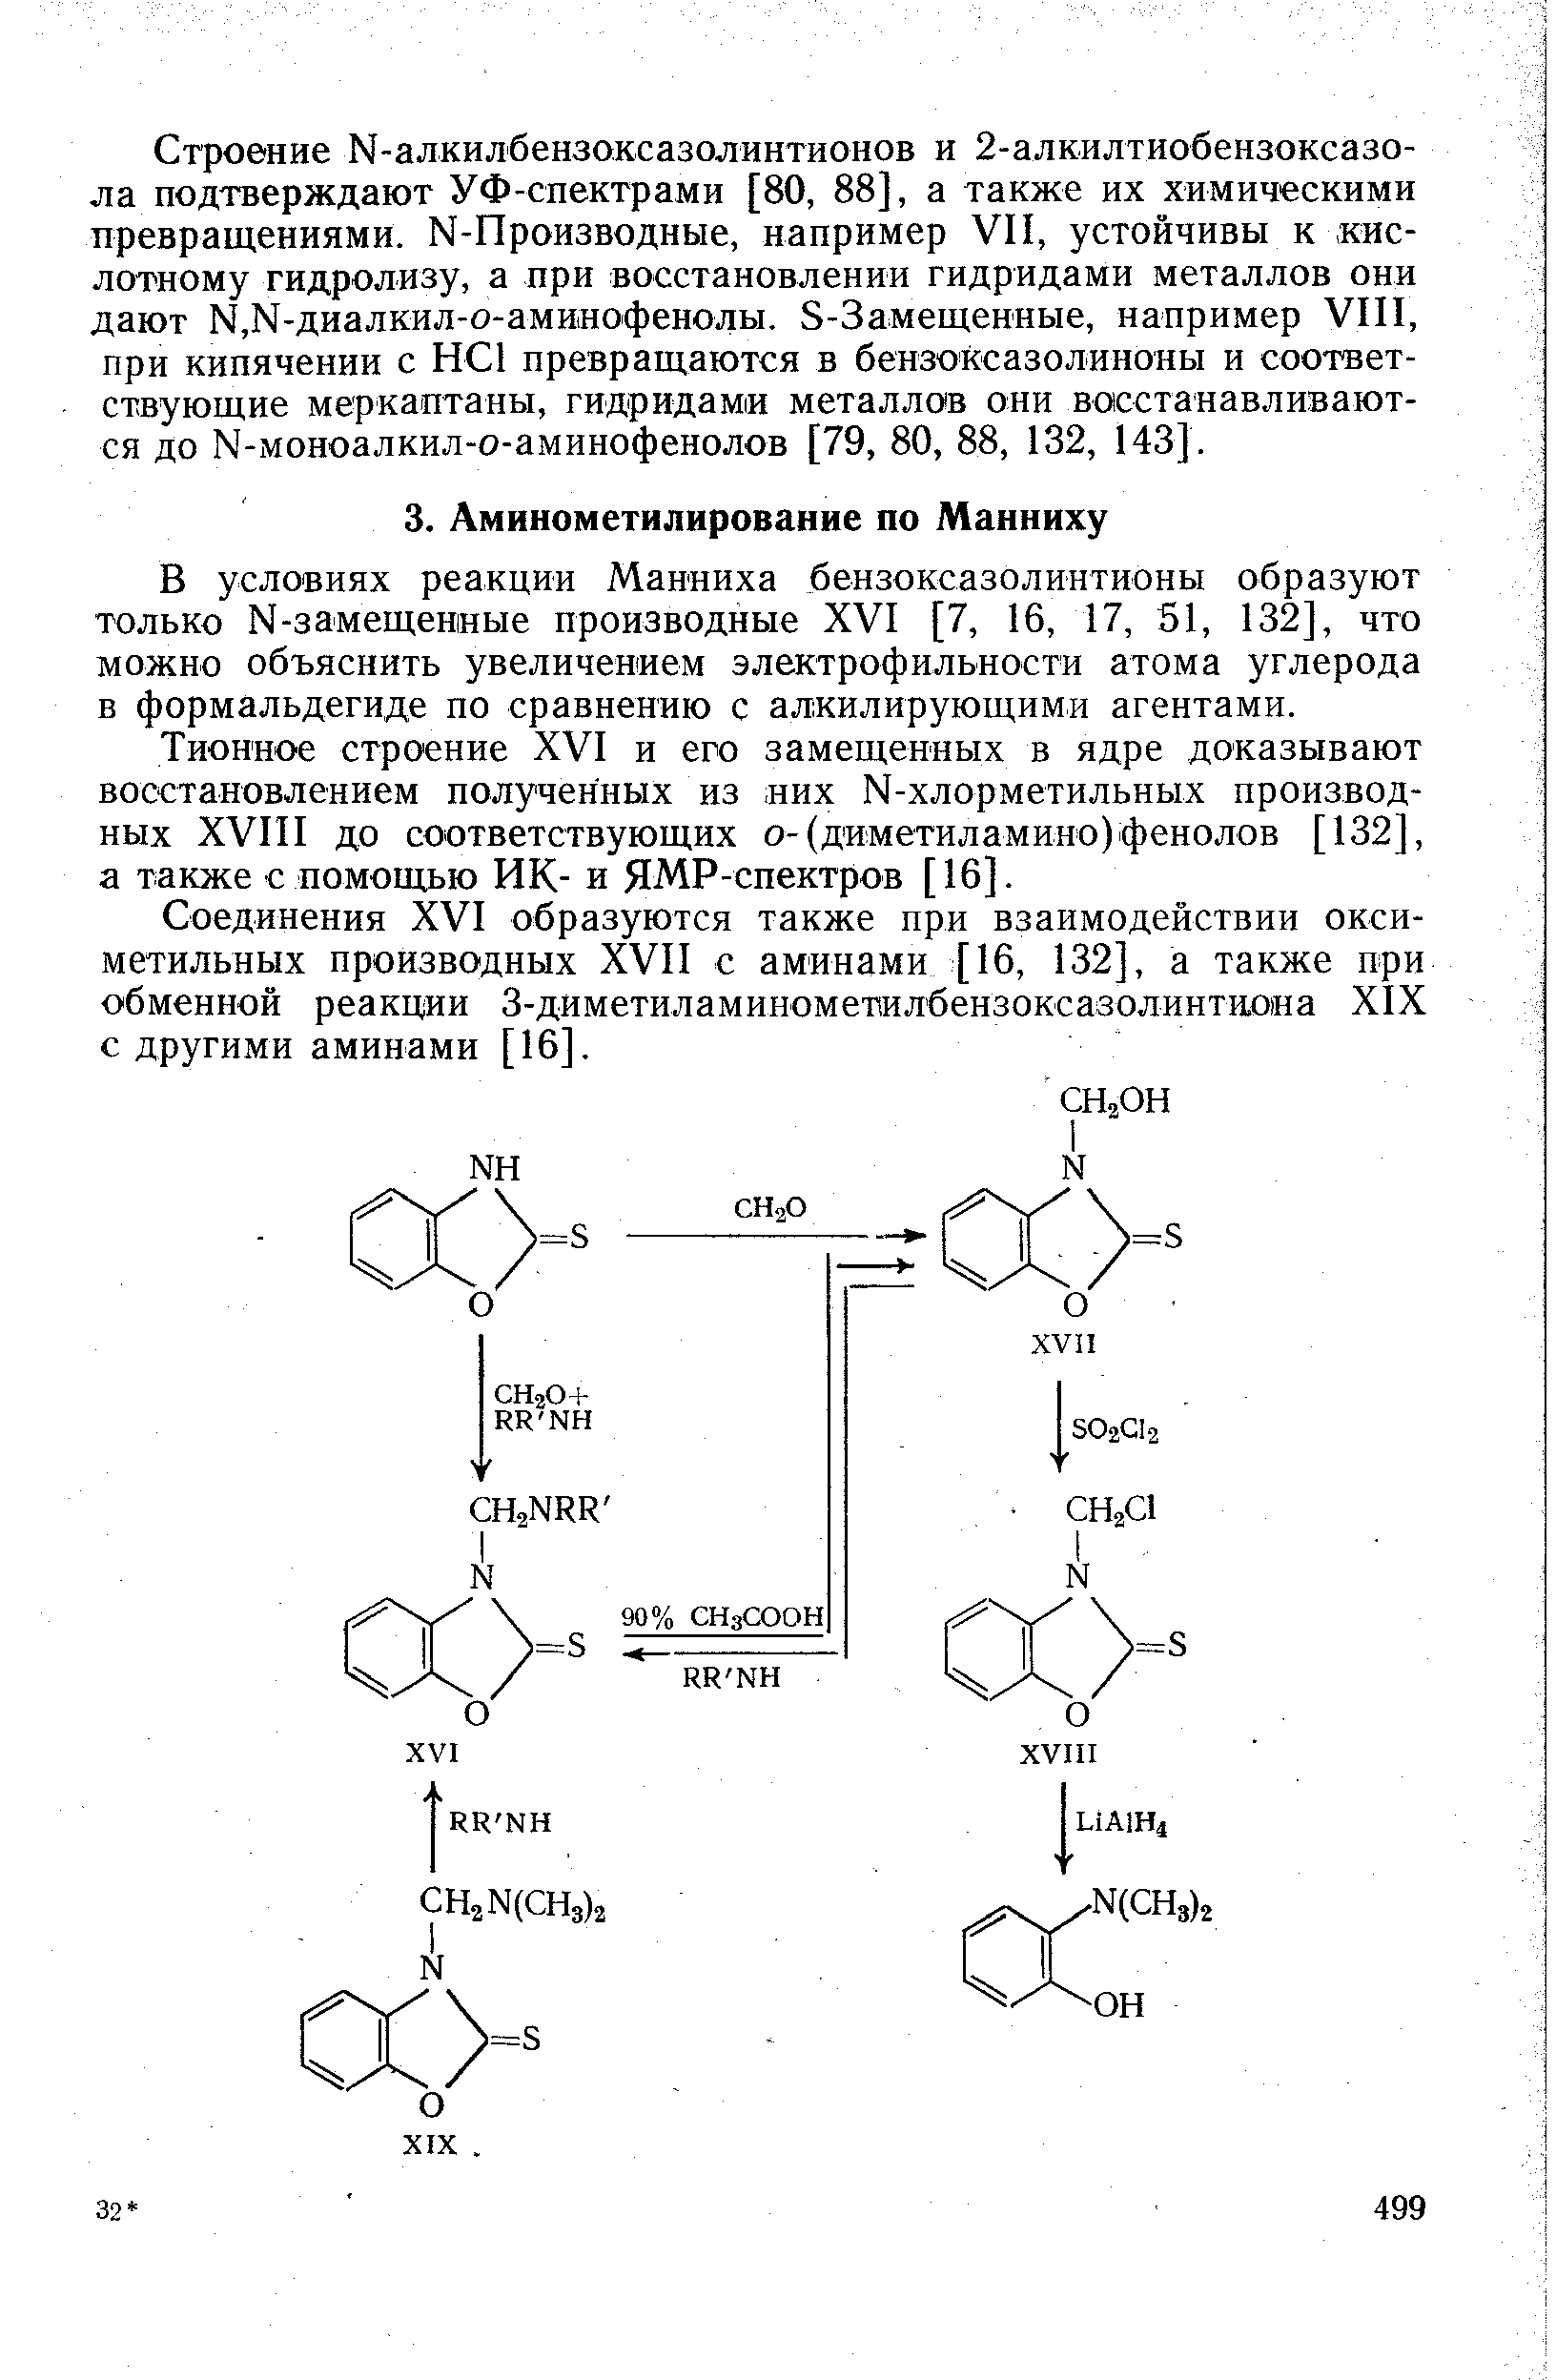 В условиях реакции Манниха бензоксазолинтионы образуют только N-замещенные производные XVI [7, 16, 17, 51, 132], что можно объяснить увеличением электрофильности атома углерода в формальдегиде по сравнению с алкилирующими агентами.